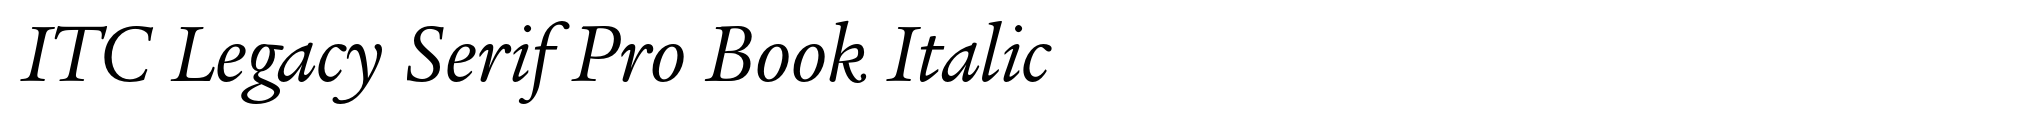 ITC Legacy Serif Pro Book Italic image